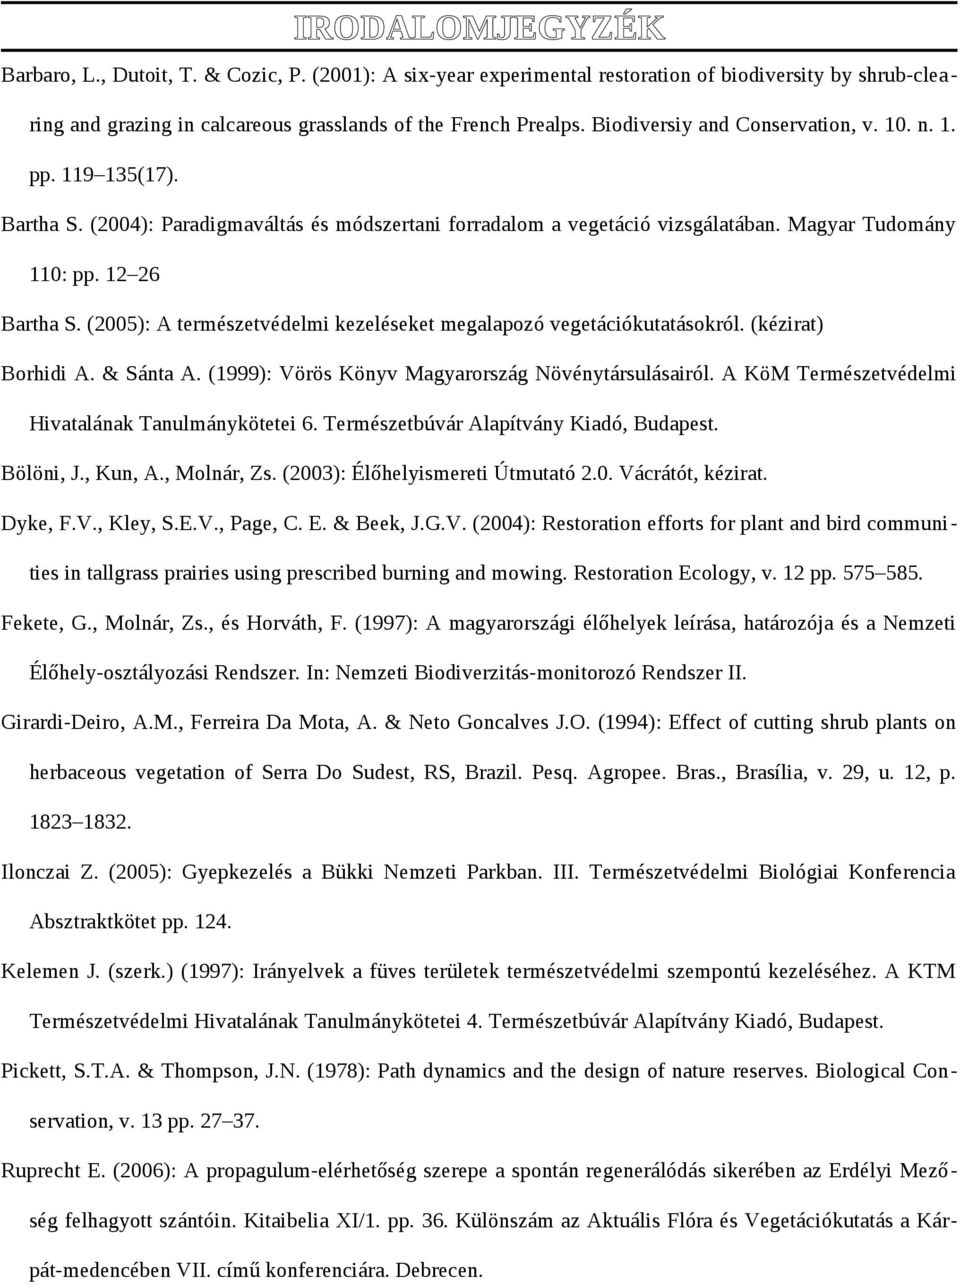 (2005): A természetvédelmi kezeléseket megalapozó vegetációkutatásokról. (kézirat) Borhidi A. & Sánta A. (999): Vörös Könyv Magyarország Növénytársulásairól.